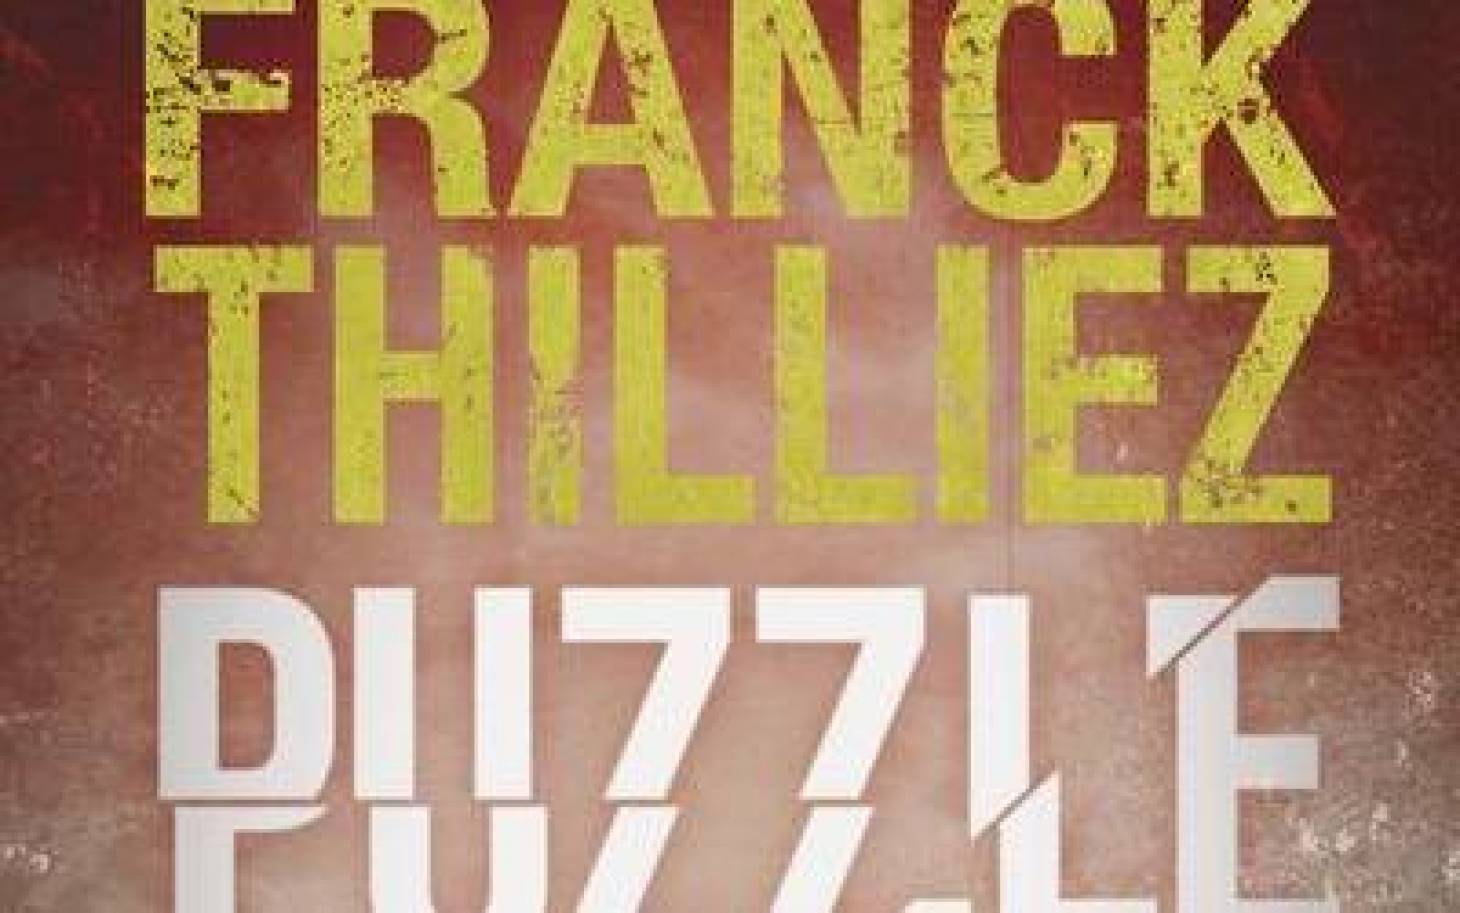 Puzzle, le nouveau roman de Franck Thilliez sortira le 3 octobre